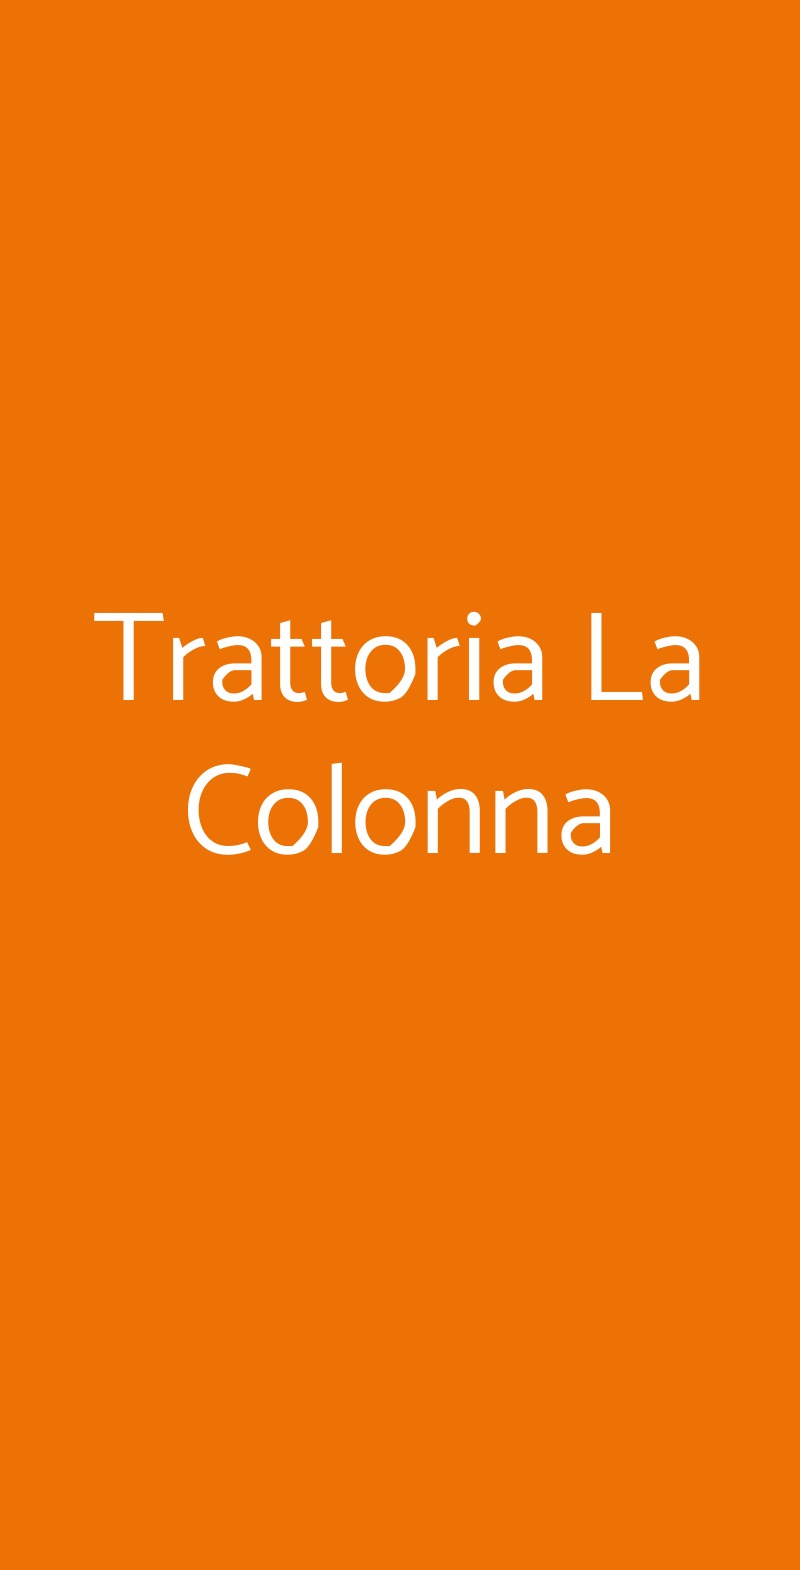 Trattoria La Colonna Milano menù 1 pagina